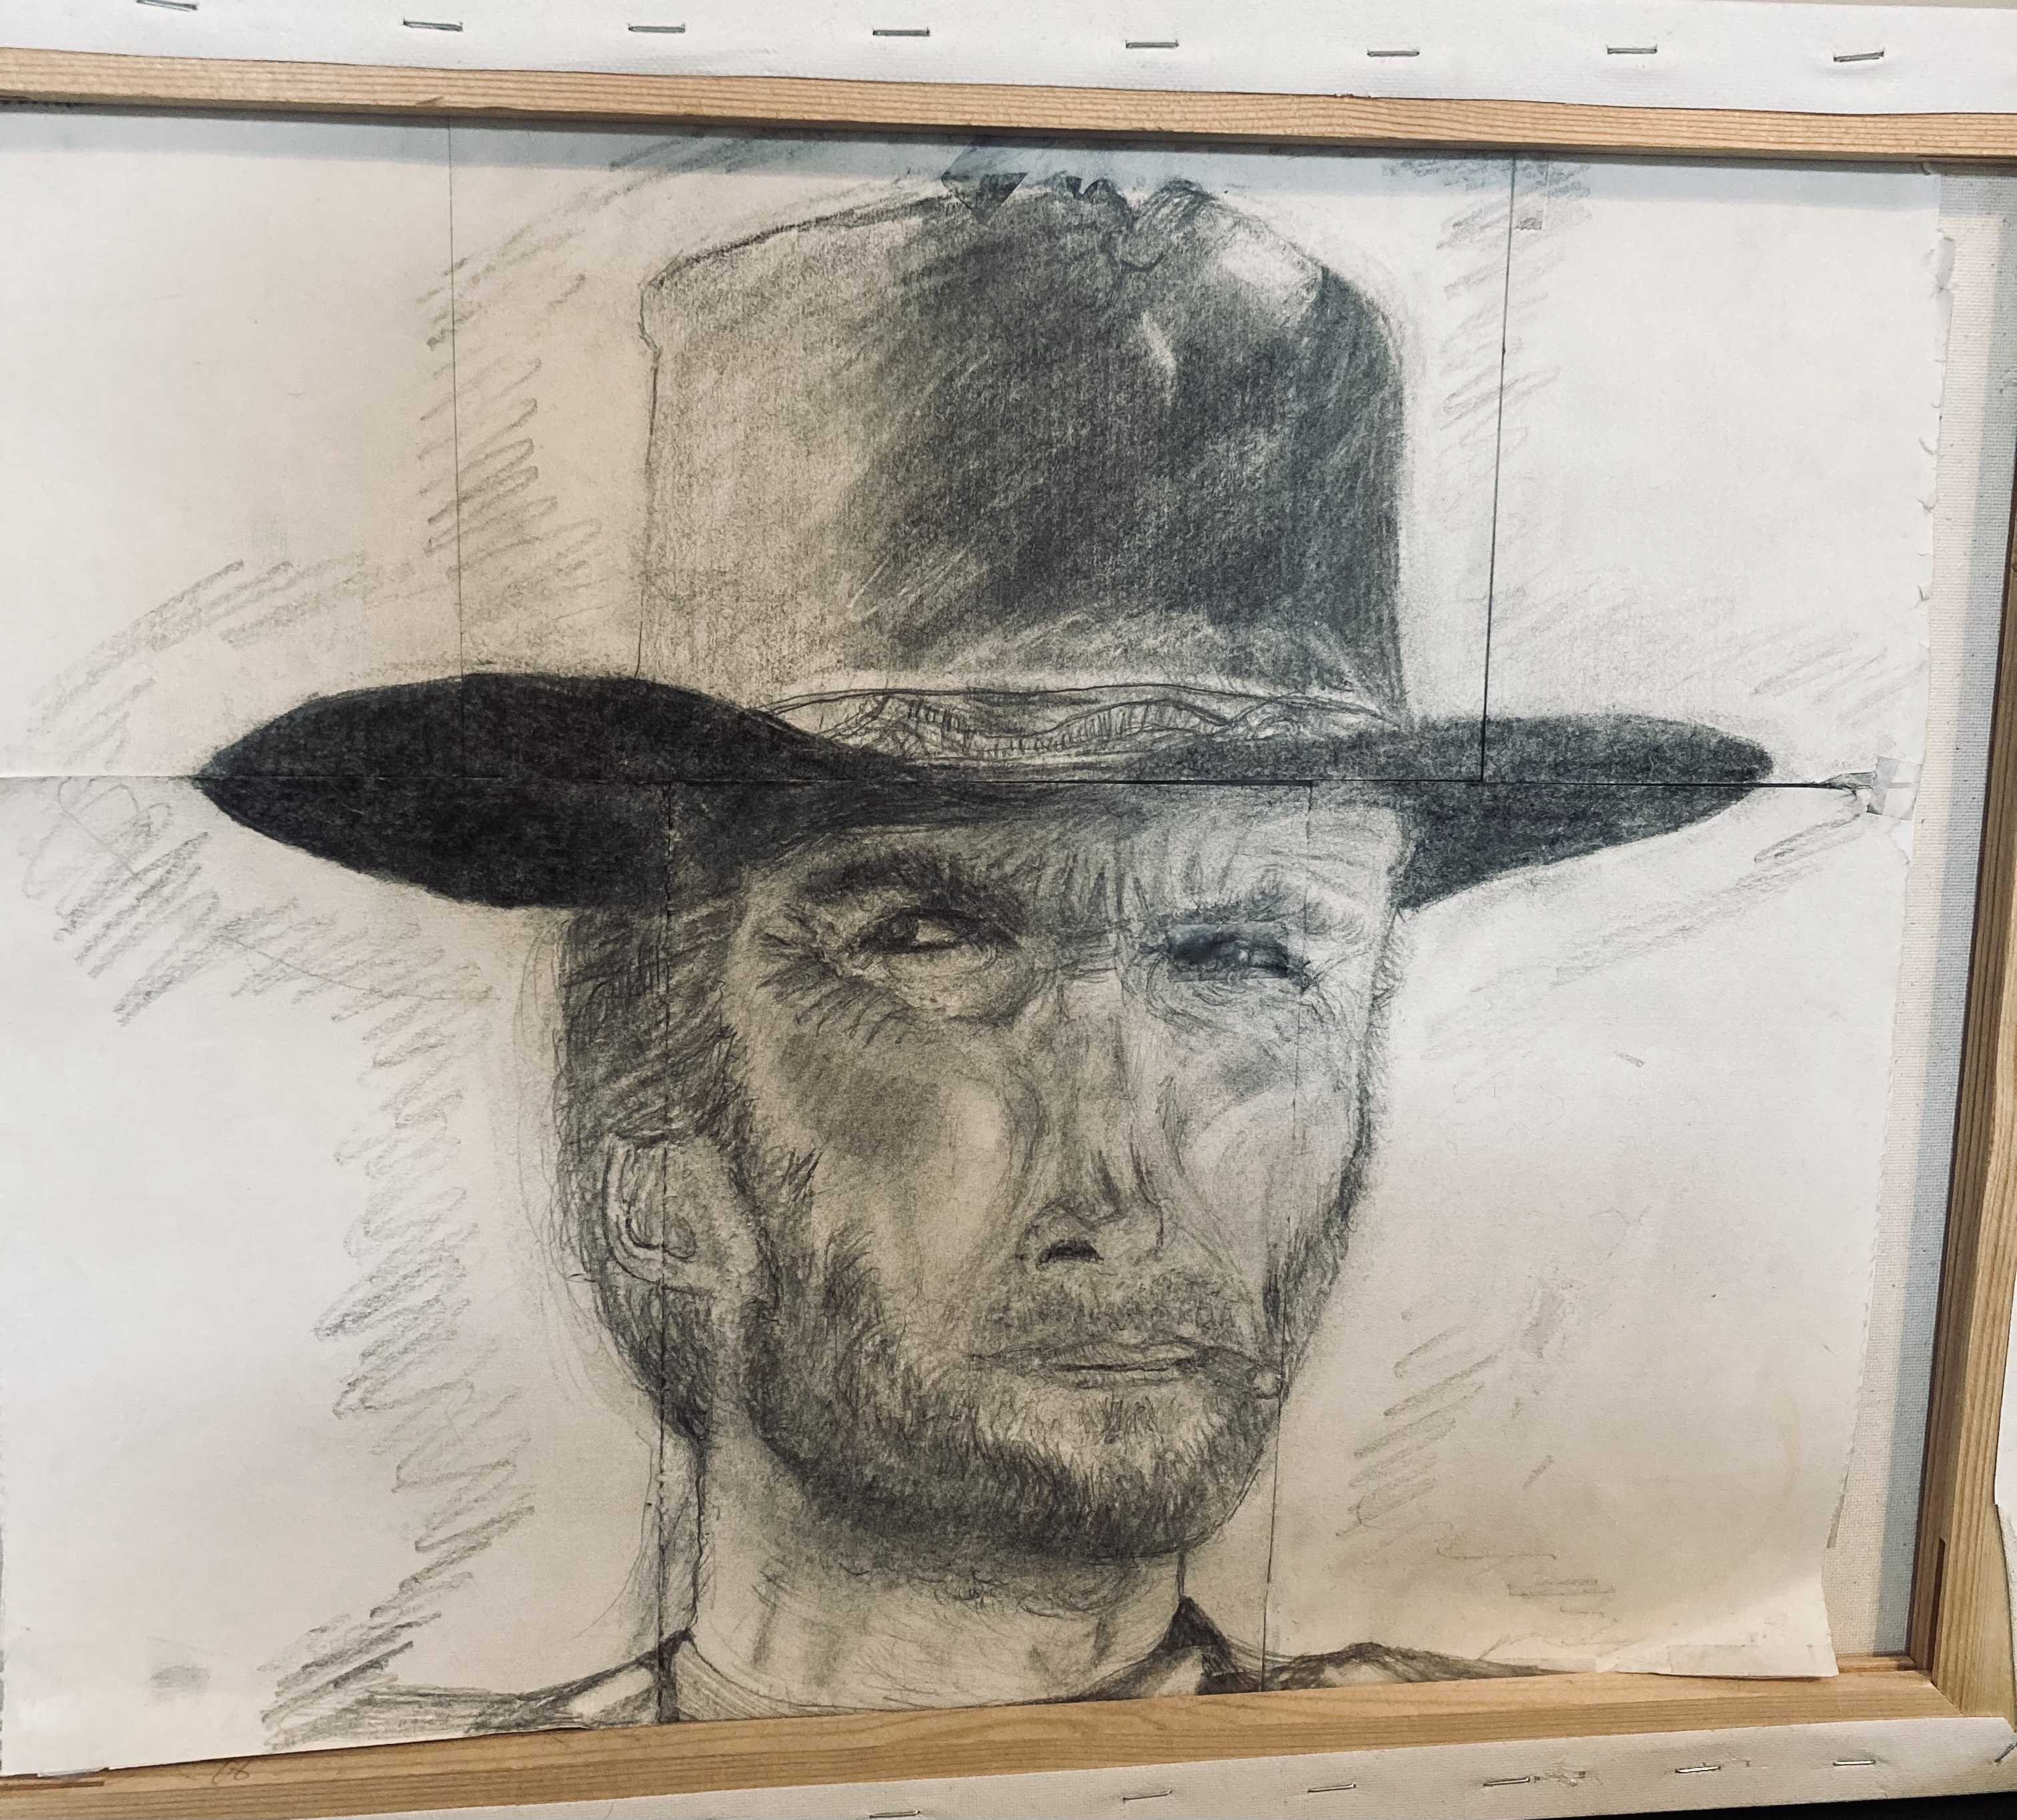 Michael Johnson’s Clint Eastwood portrait